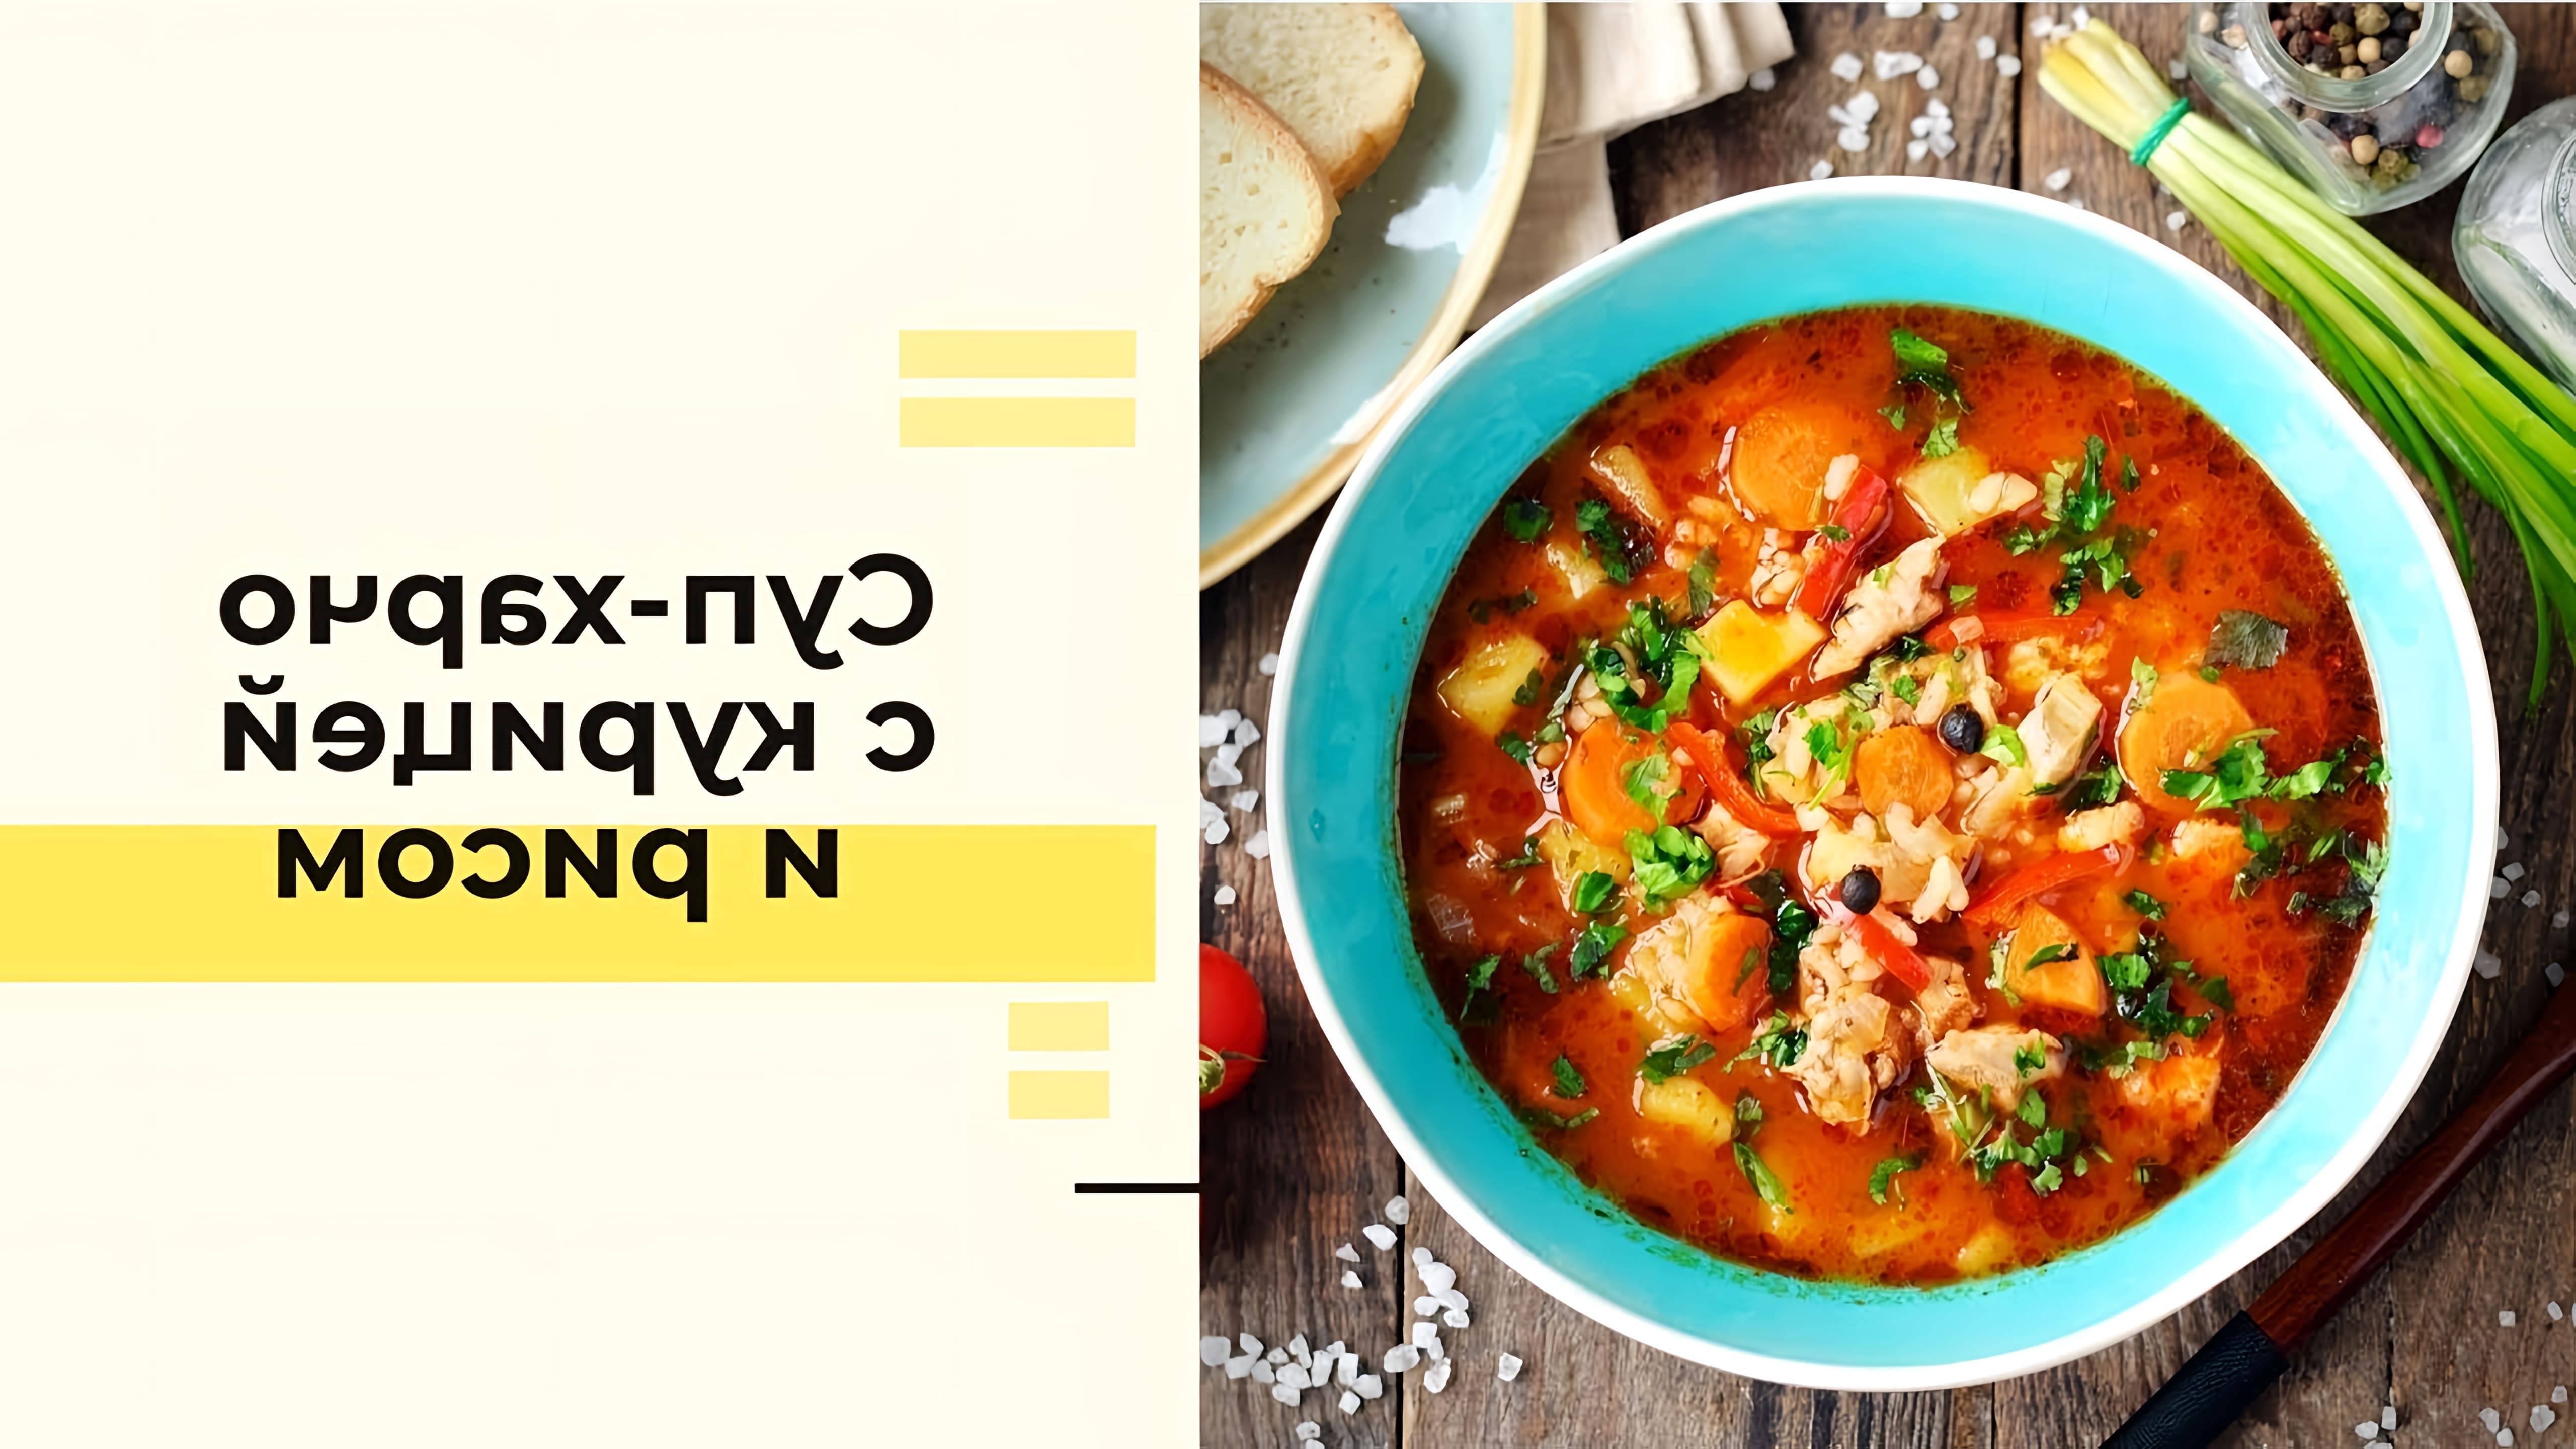 Суп-харчо с курицей и рисом: пошаговый рецепт - это видео-ролик, в котором подробно описывается процесс приготовления вкусного и ароматного супа